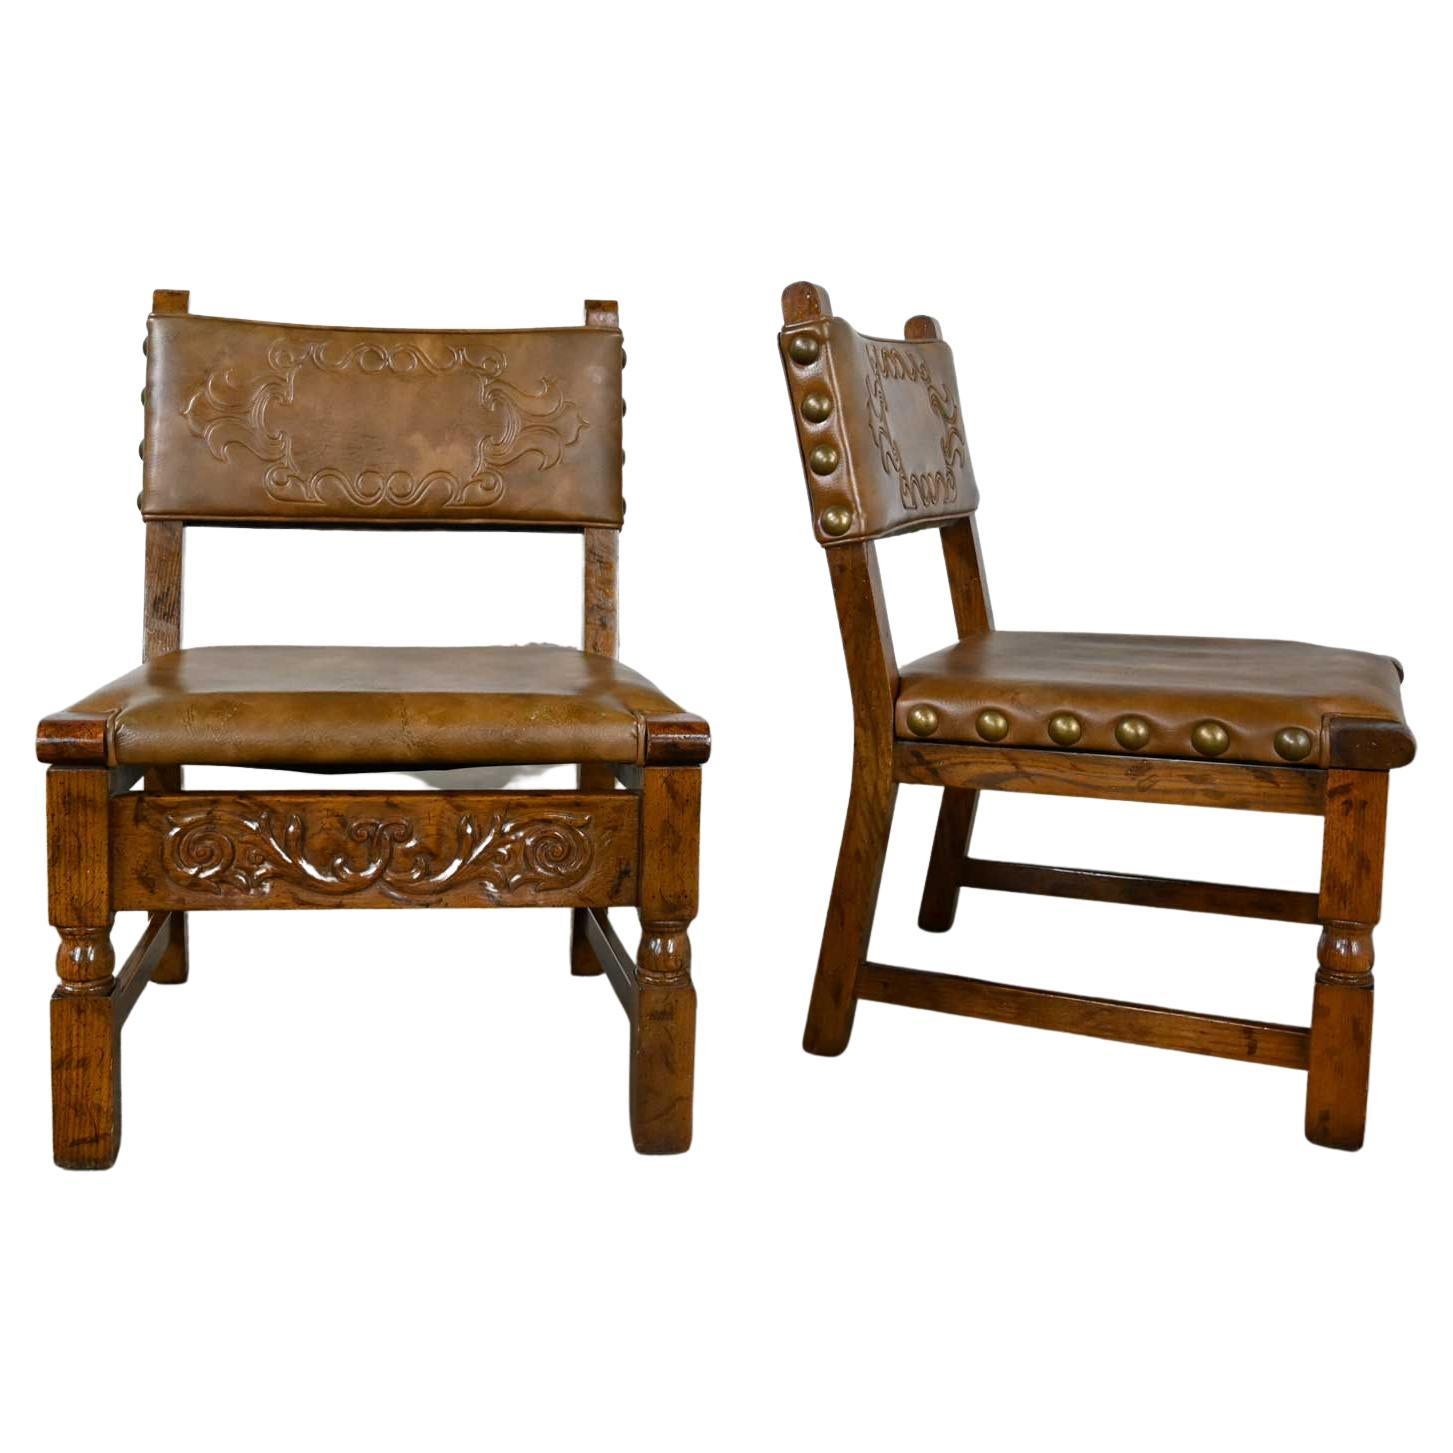 Paar Stühle aus Eichenholz im spanischen Revival-Stil mit bearbeitetem cognacfarbenem Kunstledersitz aus Eichenholz